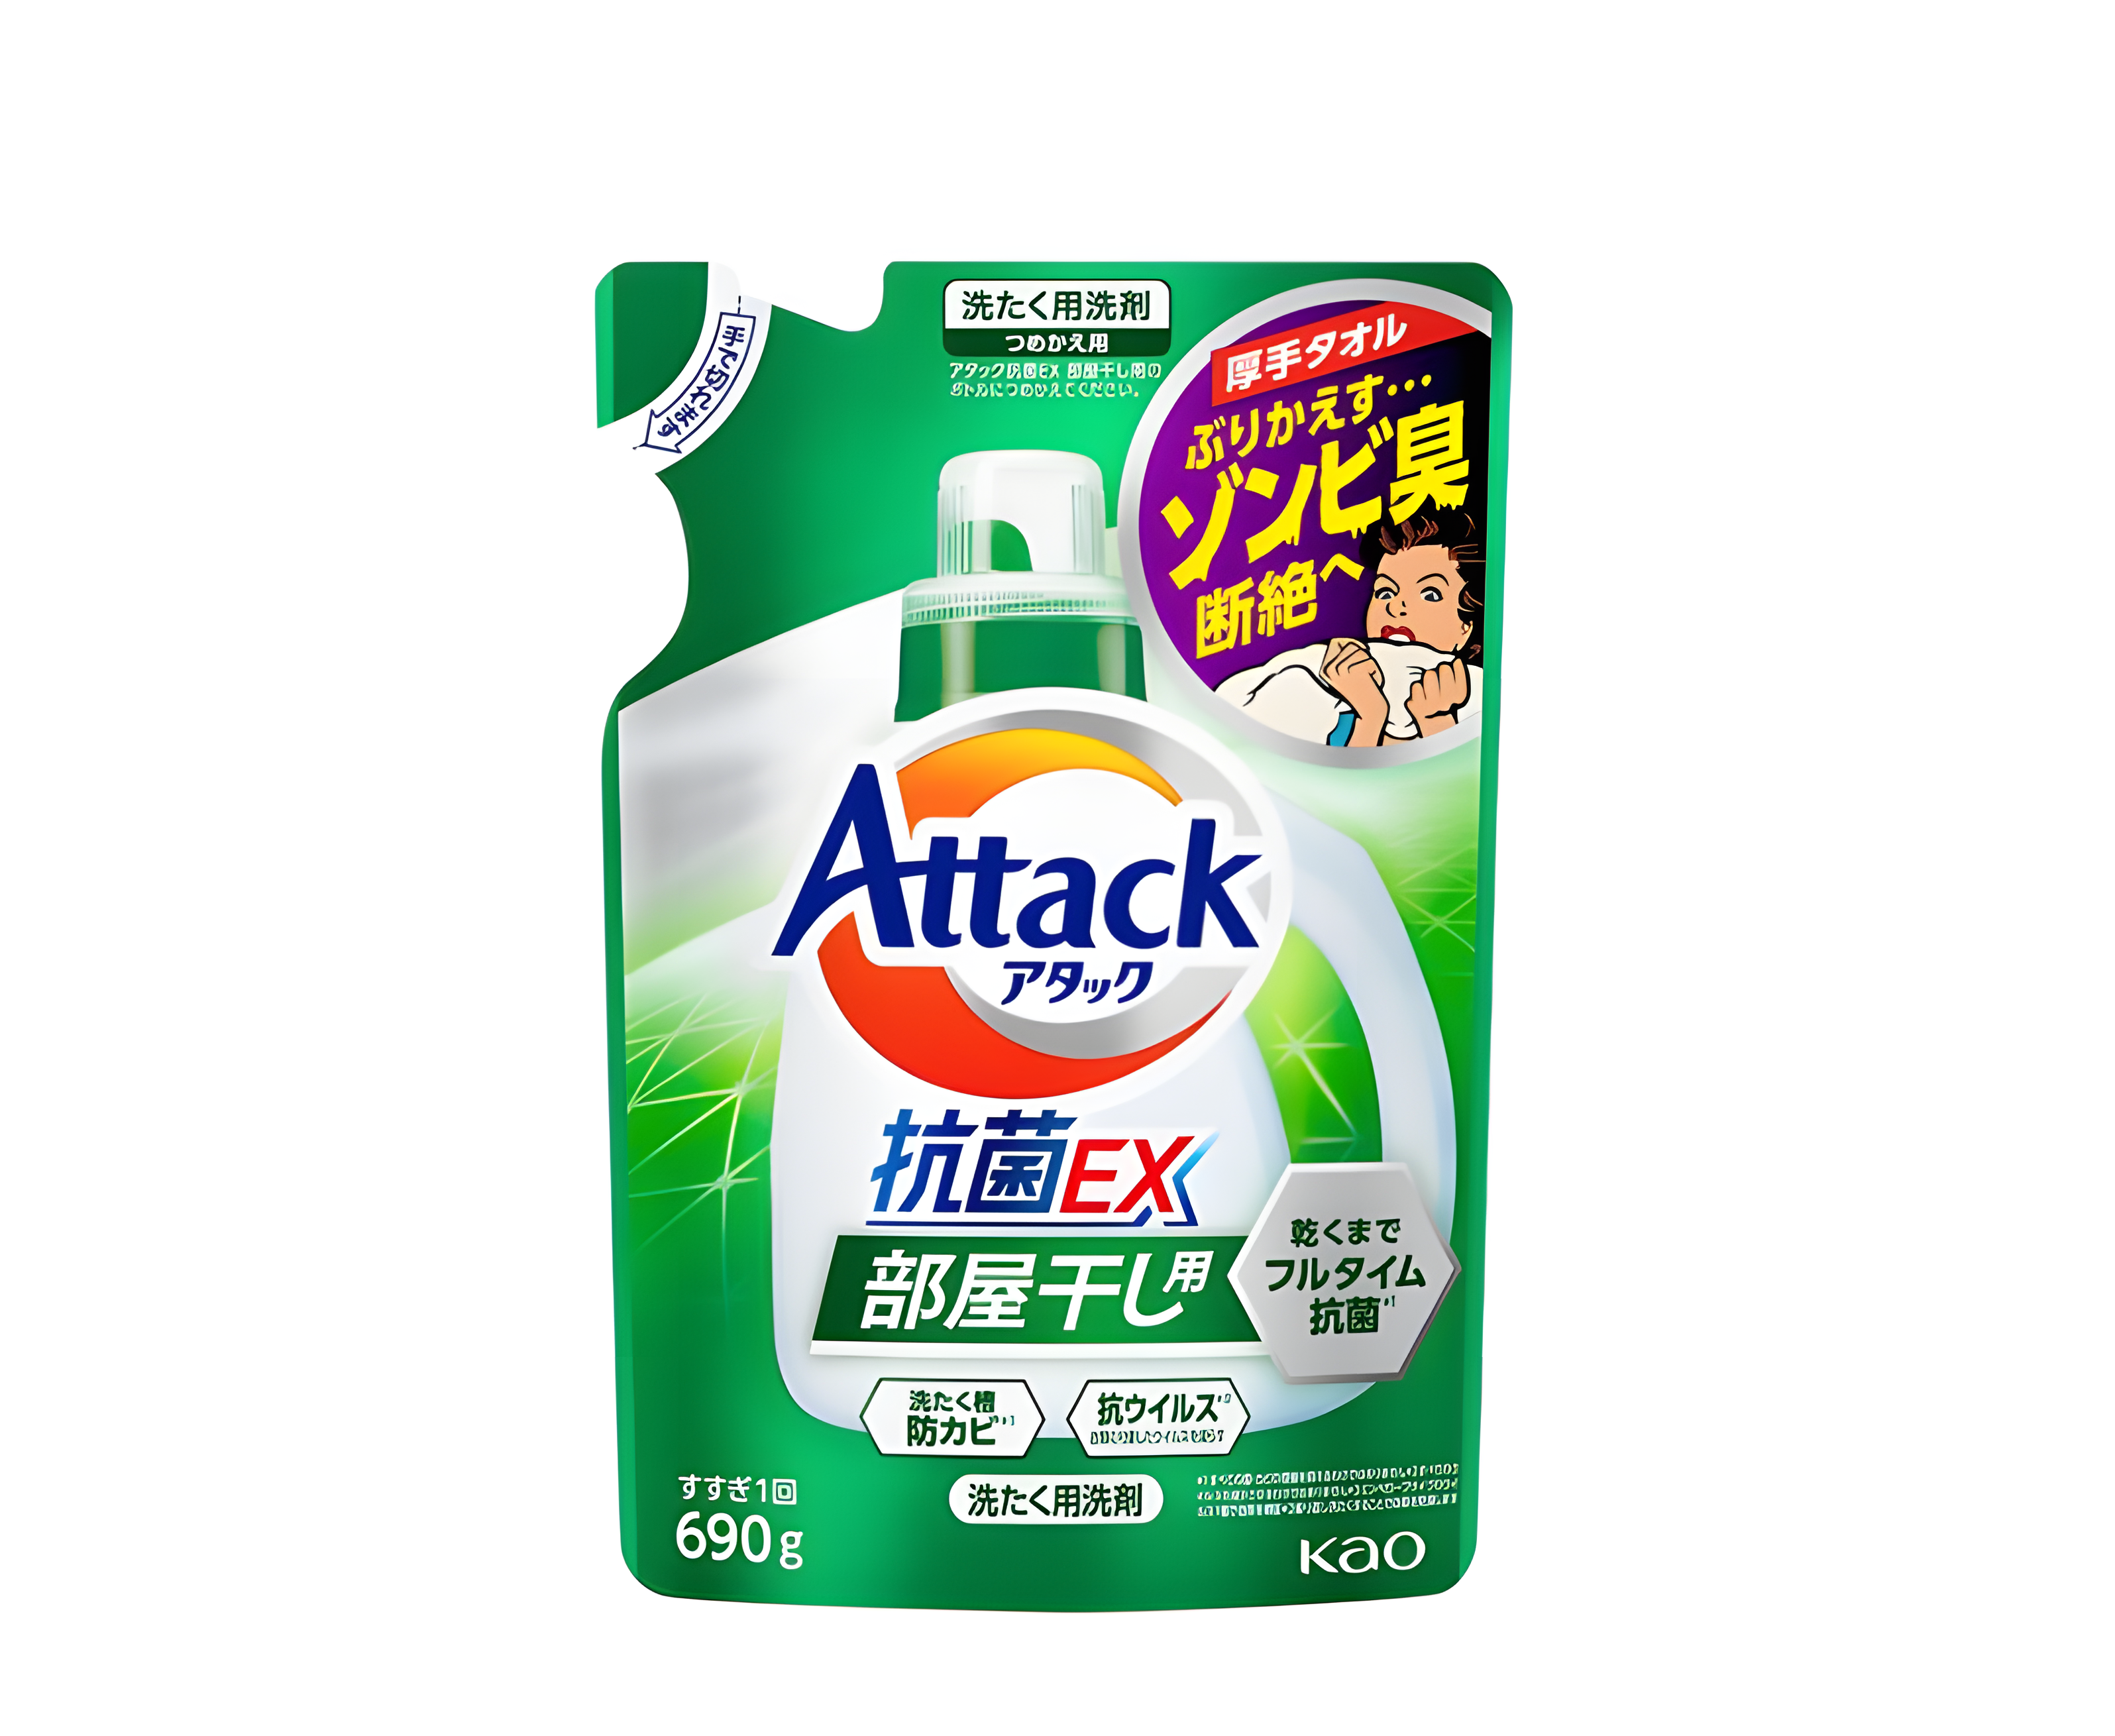 Kao Attack EX Gel Высокоэффективный антибактериальный гель для стирки и сушки в помещении с ароматом зелени 690 гр запасной блок